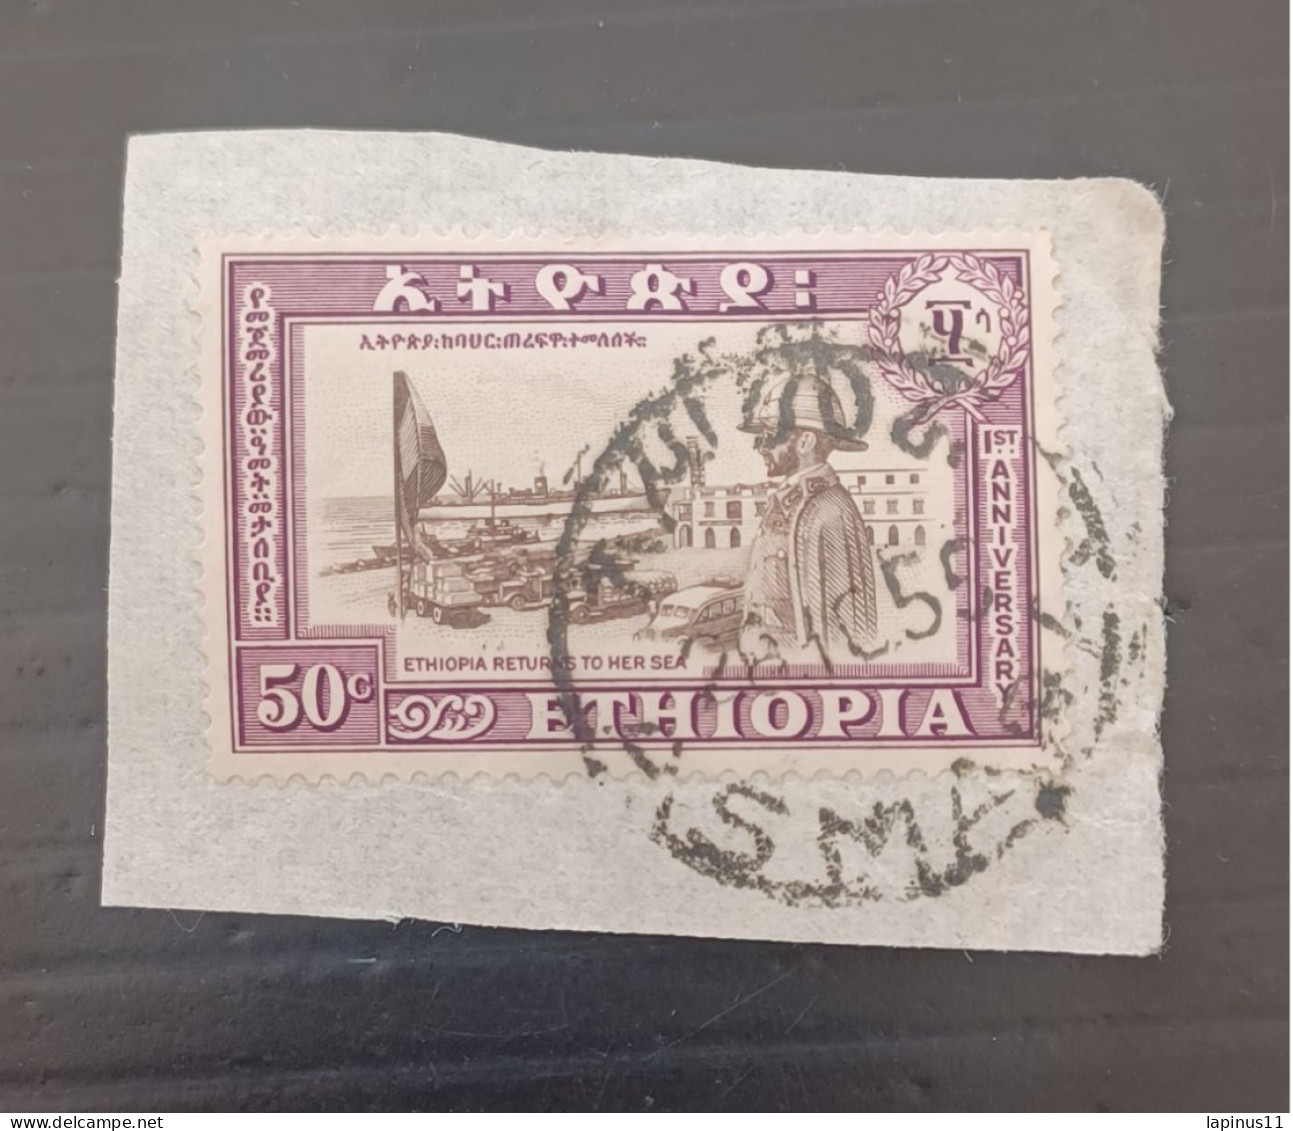 ETIOPIA 1953 ANNIVERSAIRE DU RETOUR DE L ERITREA -PORT DE L ERITREAET LE NEGUS YVERT N 325 - Ethiopia